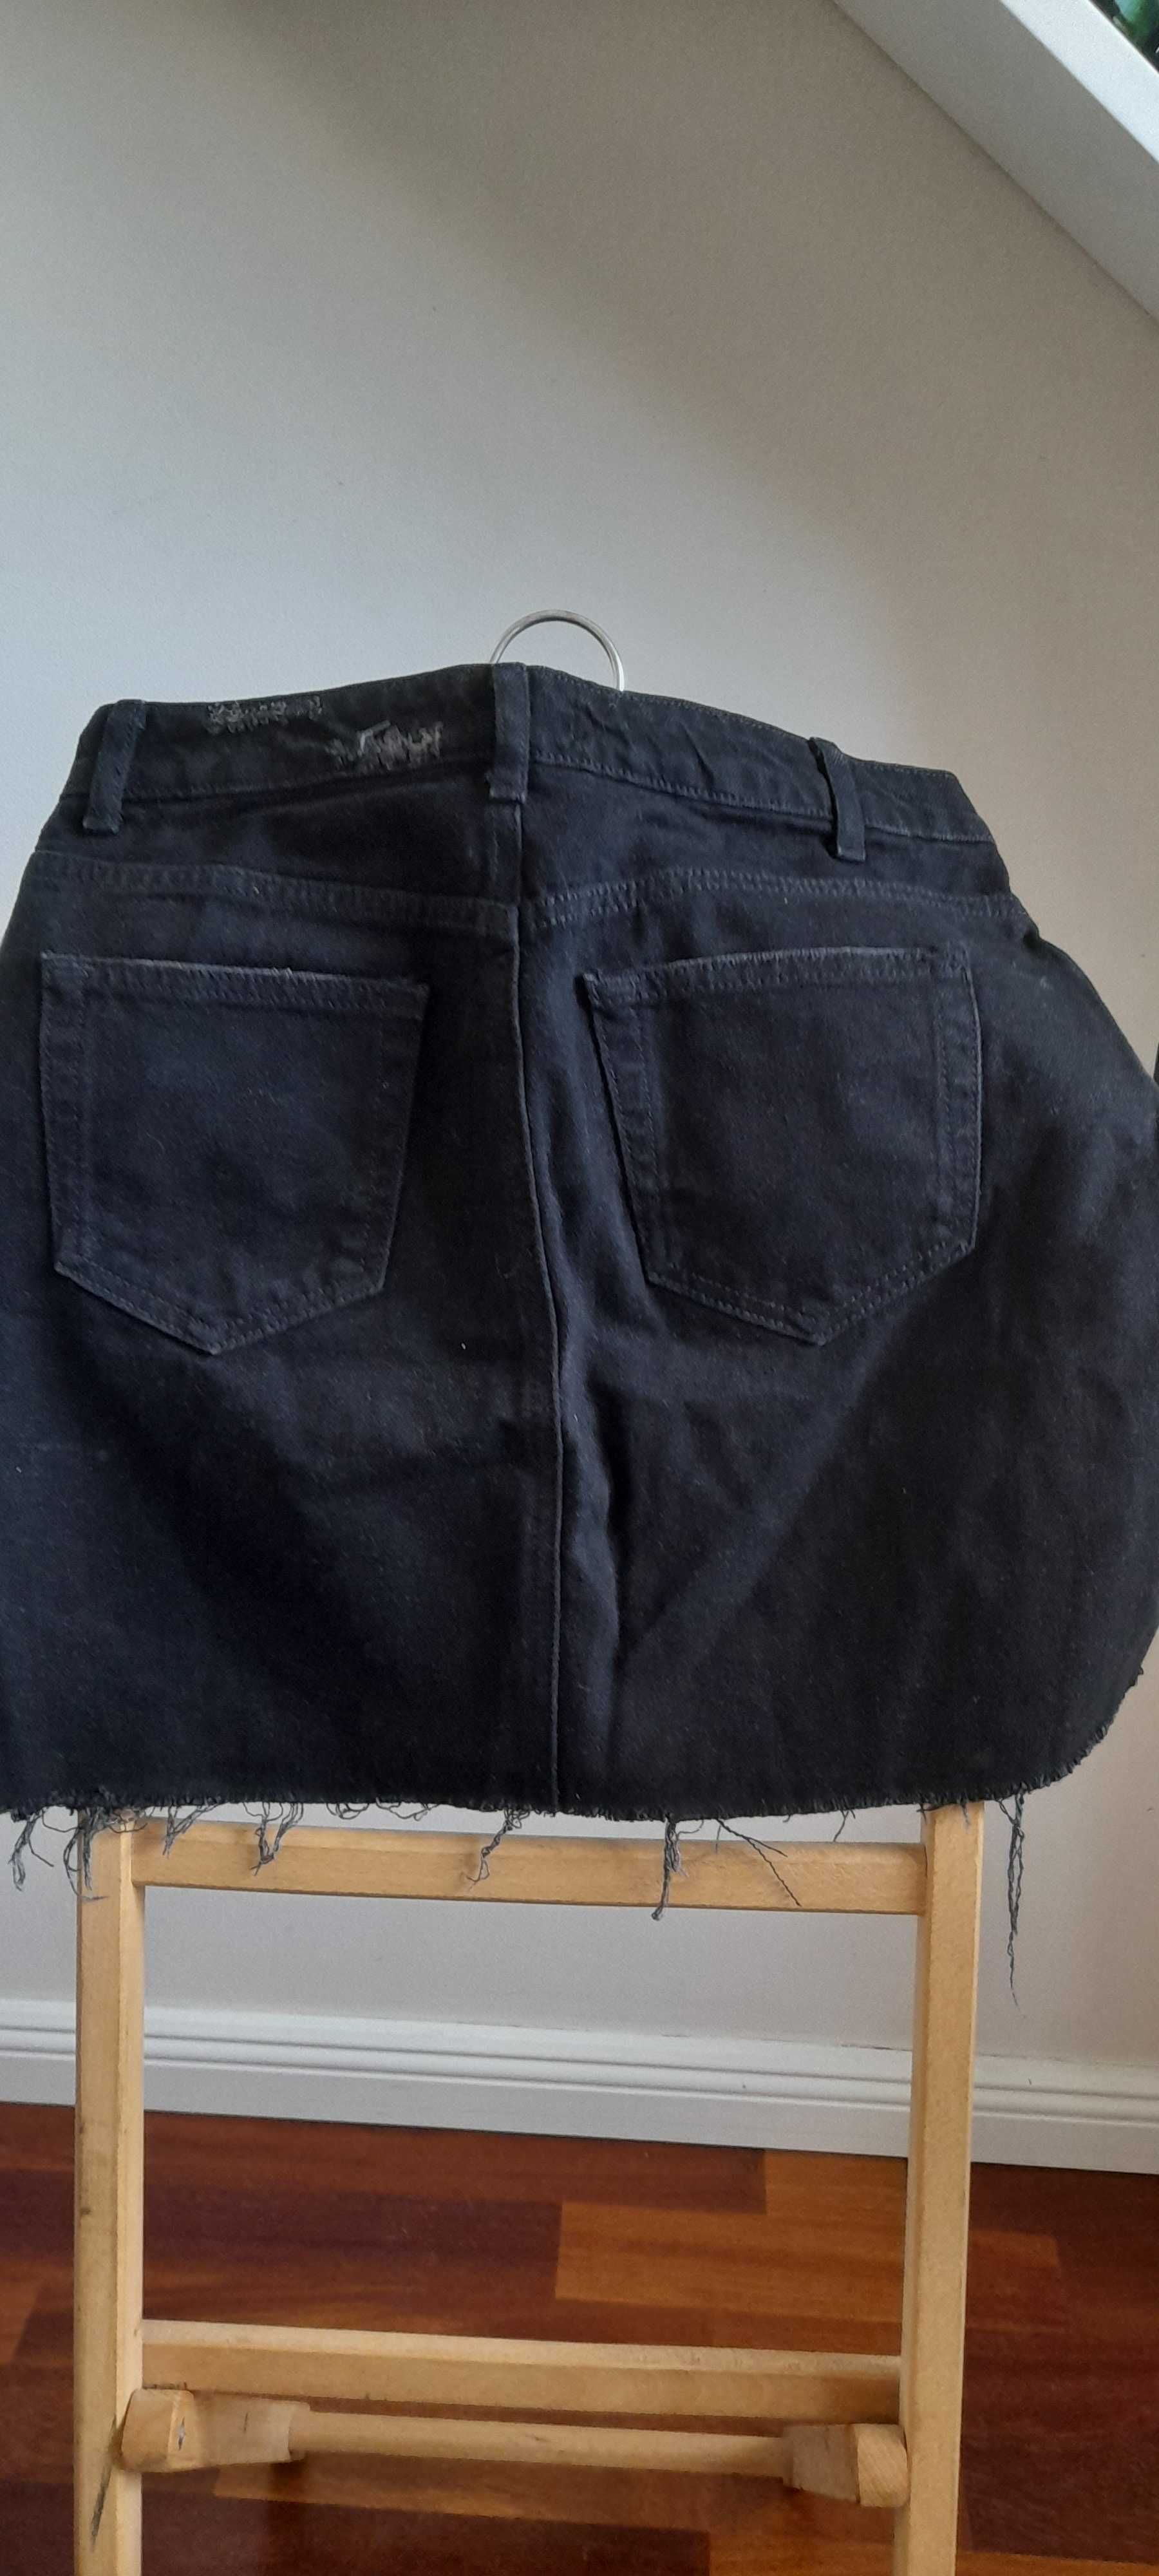 Spódnica jeansowa czarna rozmiar 38